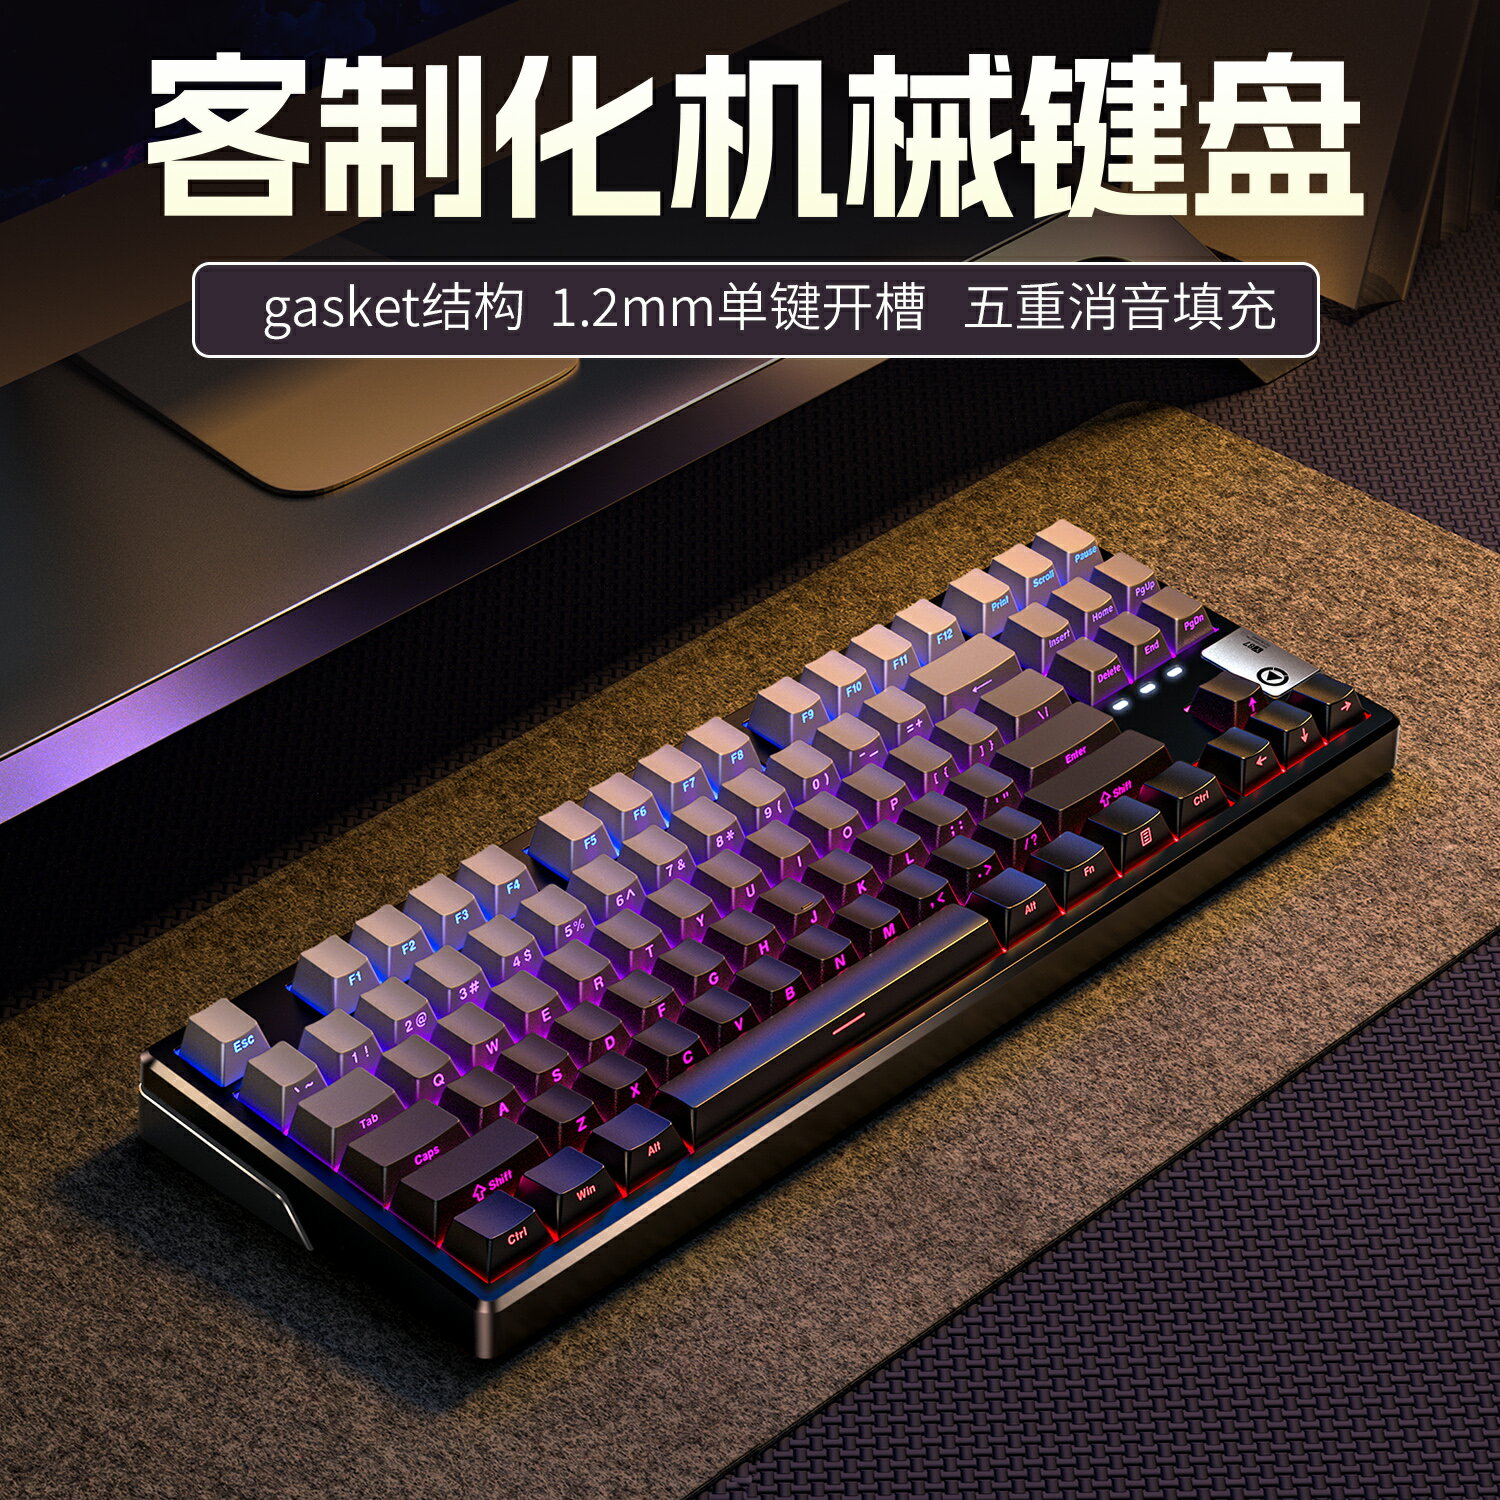 銀雕Y87機械鍵盤RGB客製化gasket結構全鍵熱插拔無線三模藍牙游戲